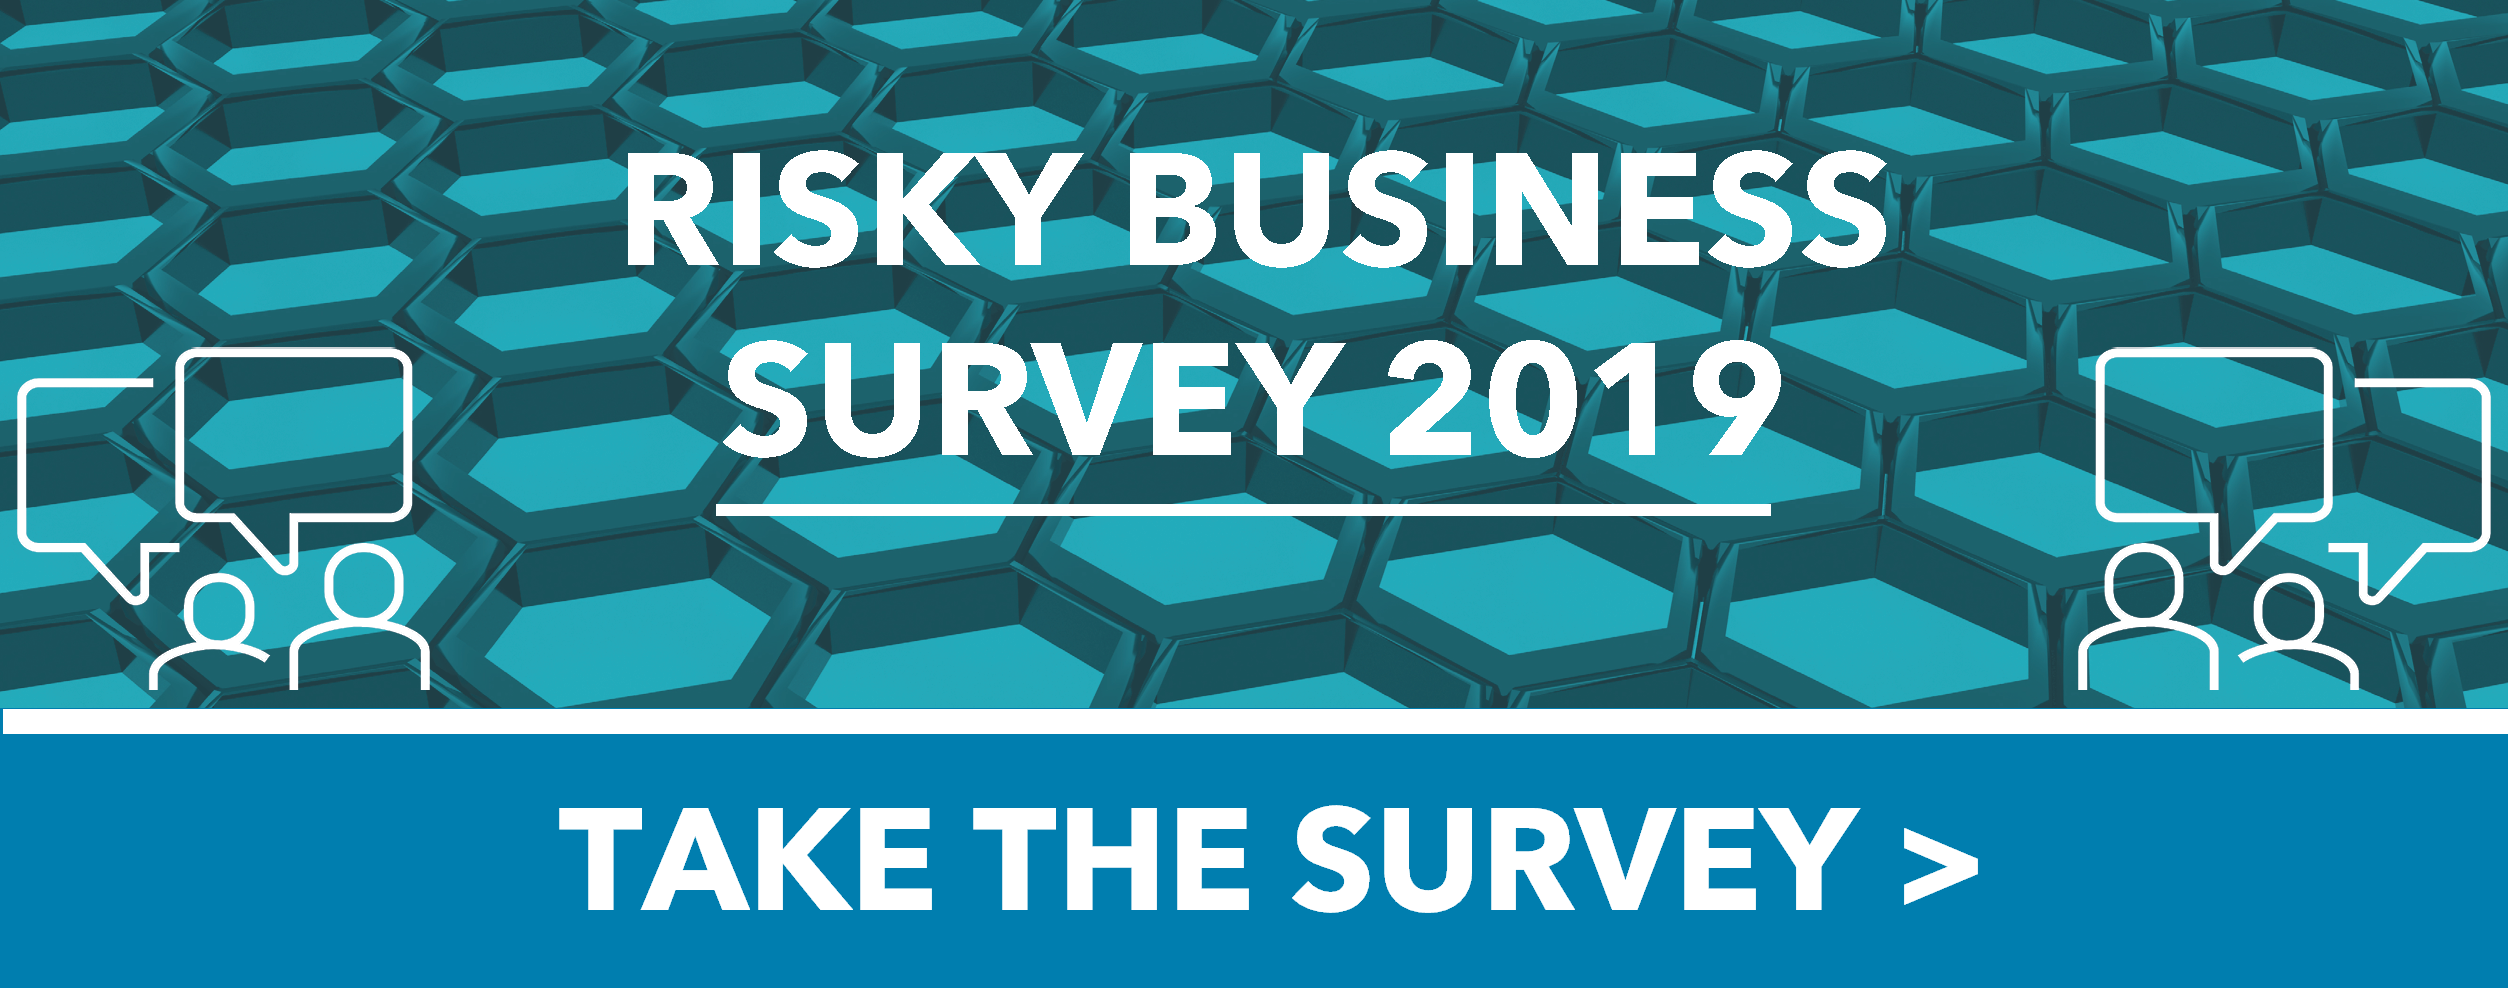 Take the Risky Business Survey 